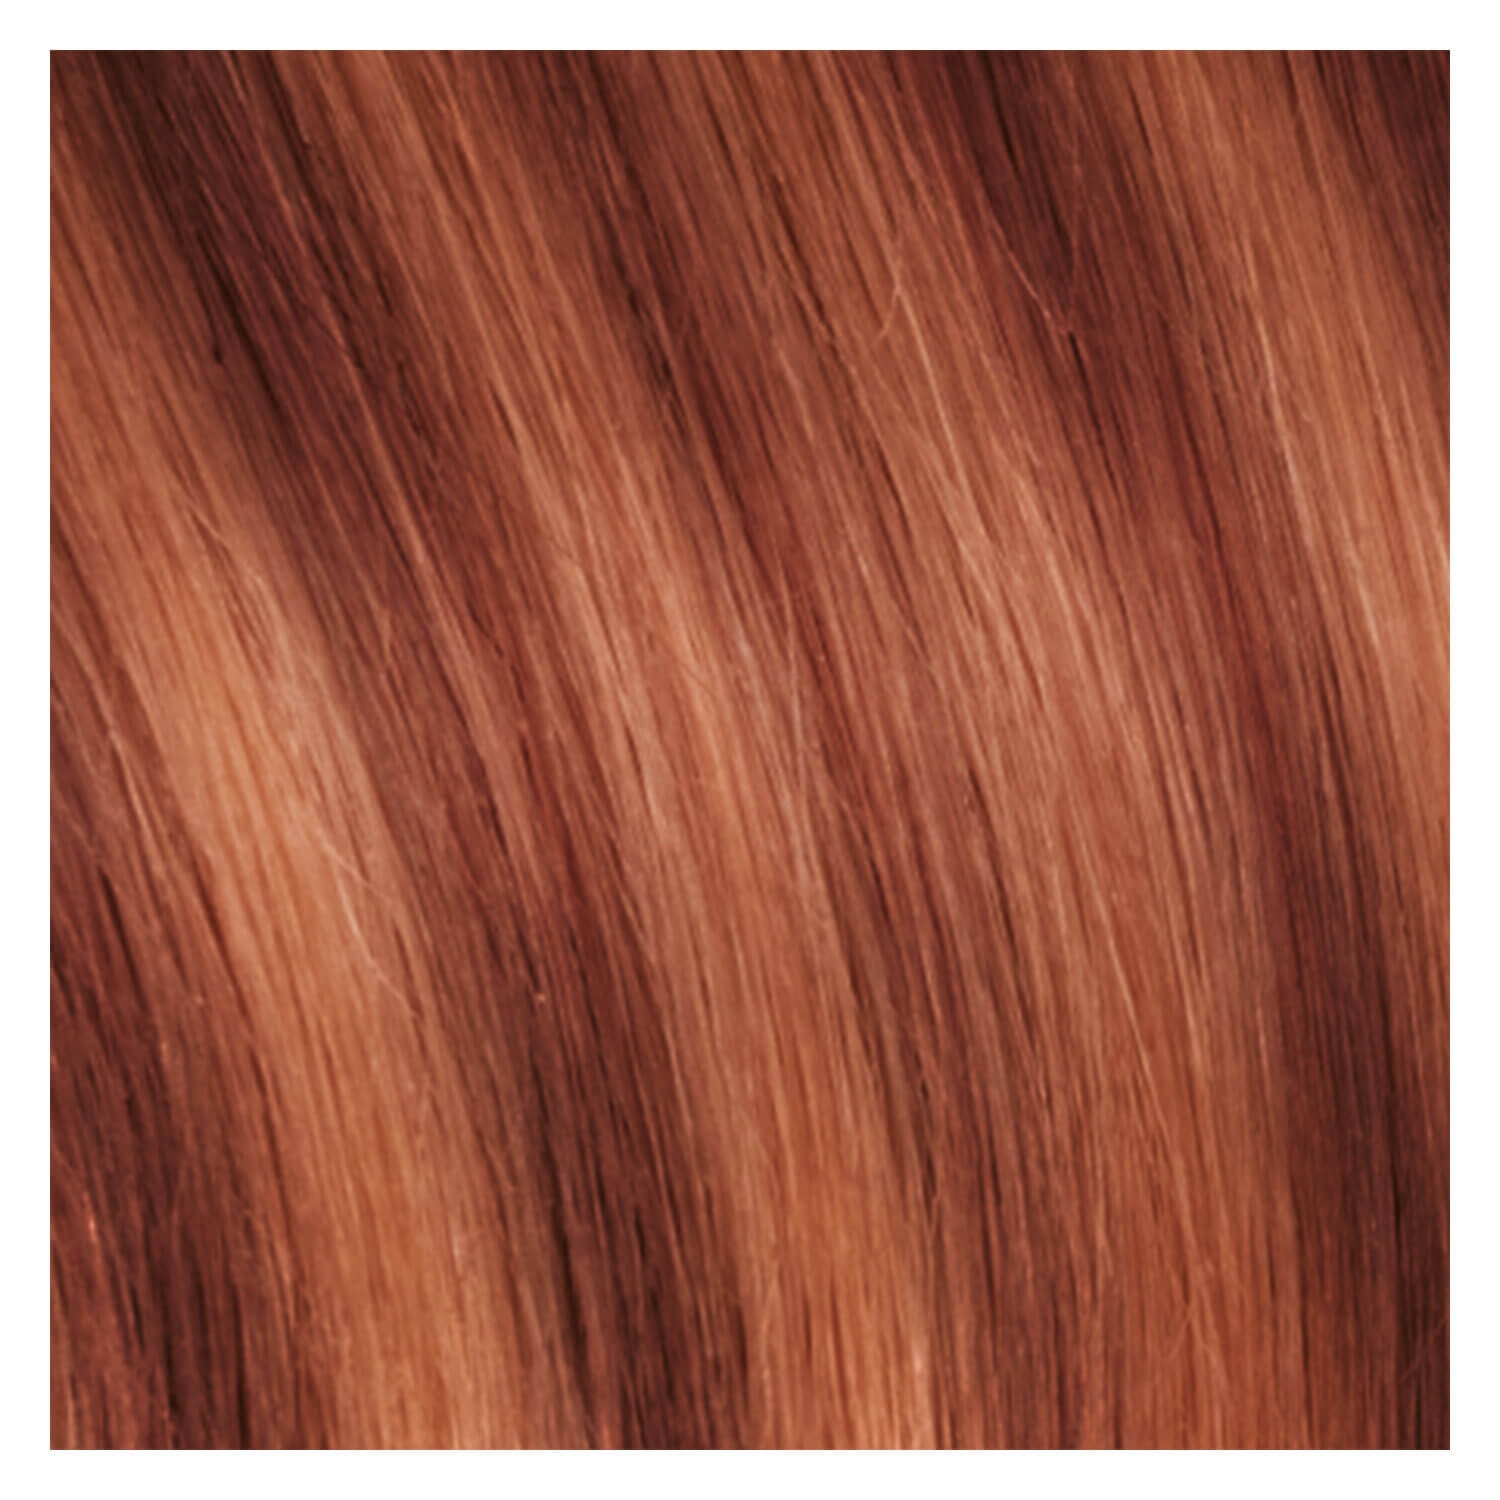 Produktbild von SHE Tape In-System Hair Extensions Straight - M21/130 Orangeblond/Helles Kupferblond 55/60cm